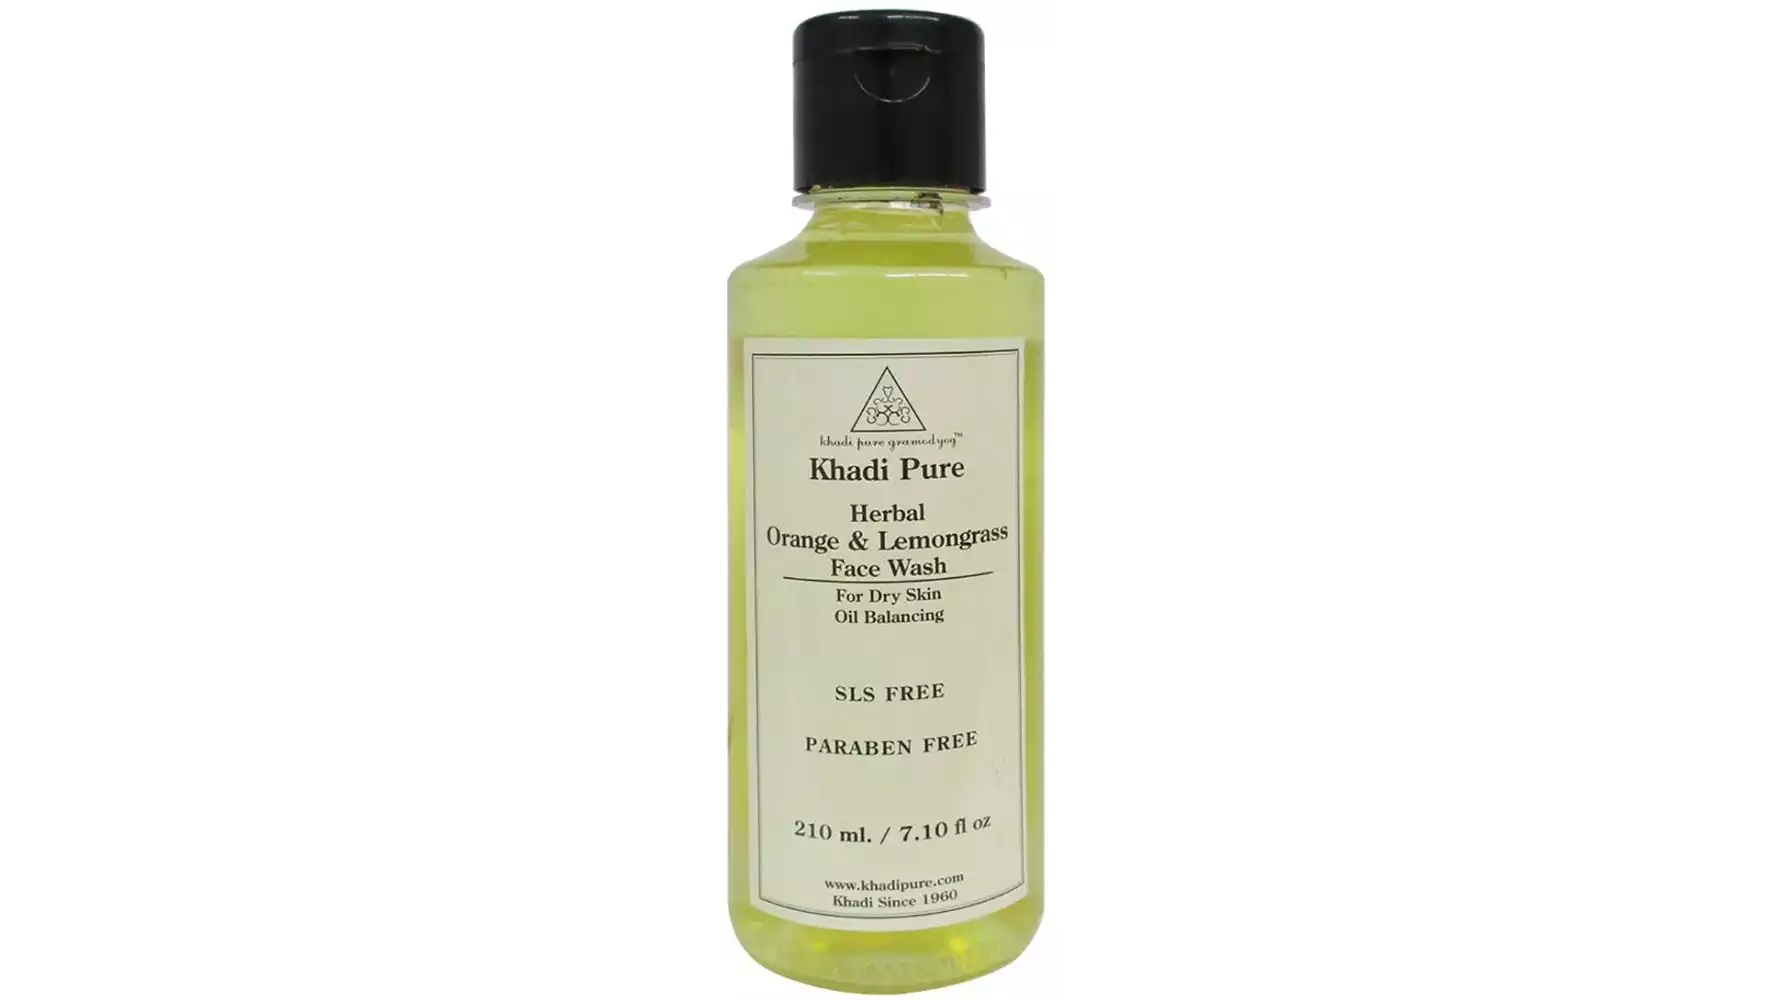 Khadi Pure Orange & Lemongrass Face Wash Sls-Paraben Free (210ml)